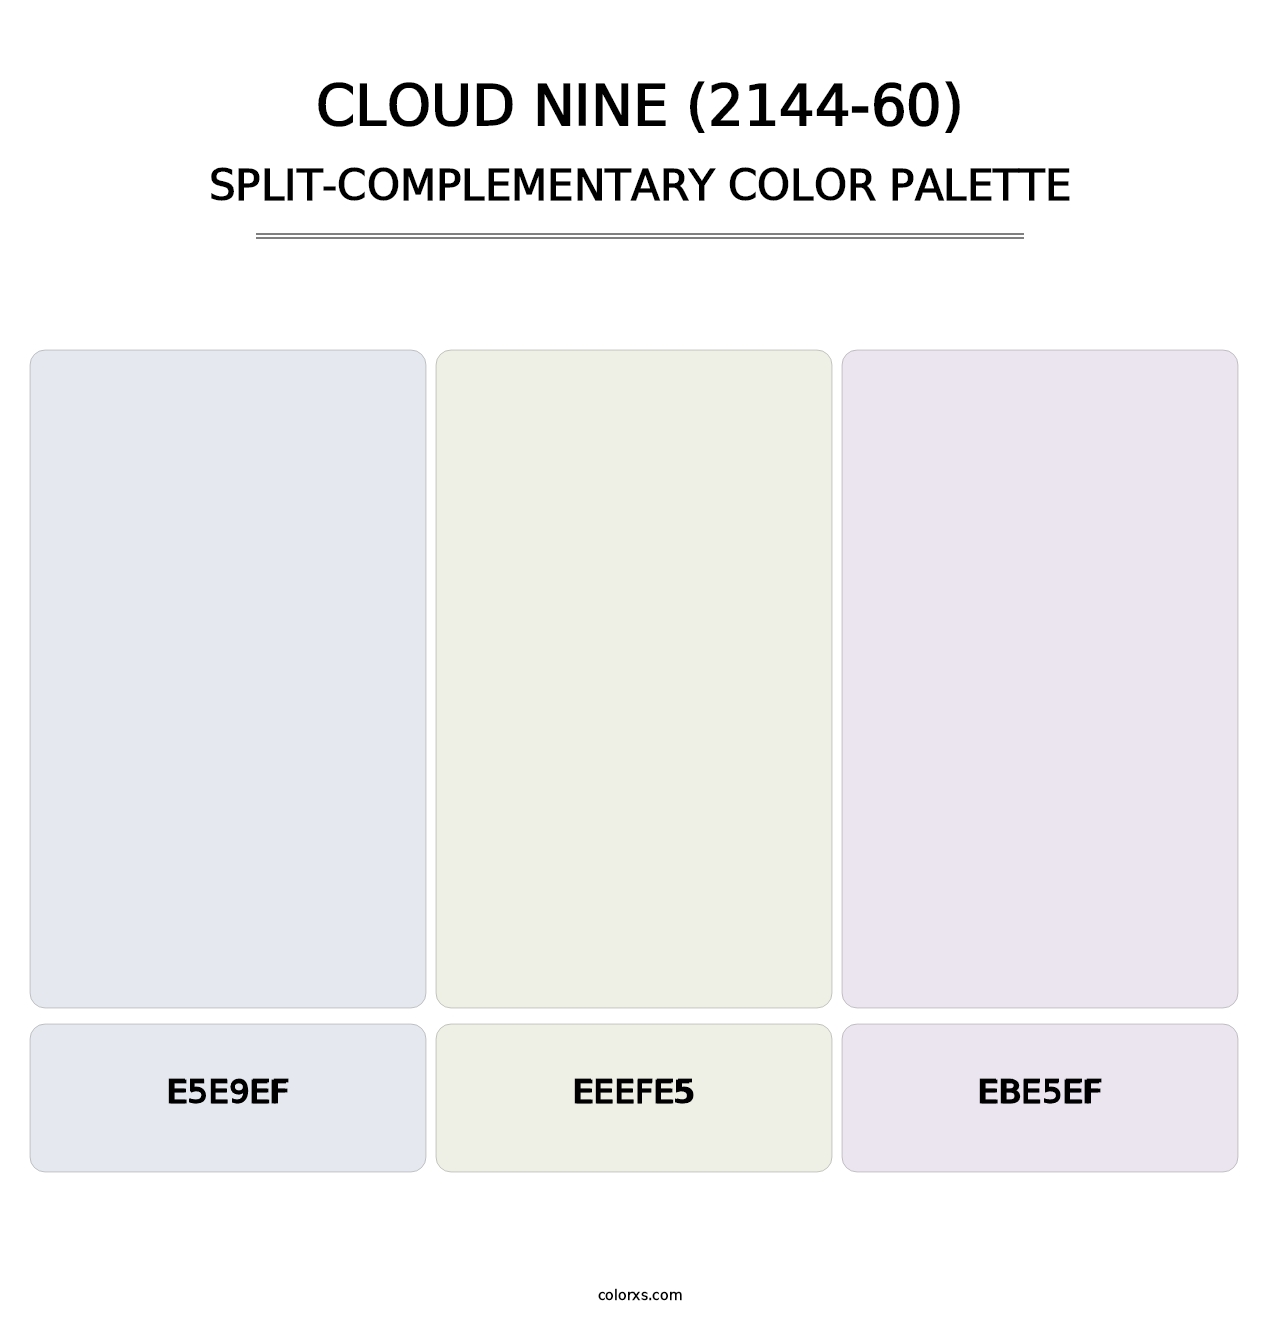 Cloud Nine (2144-60) - Split-Complementary Color Palette